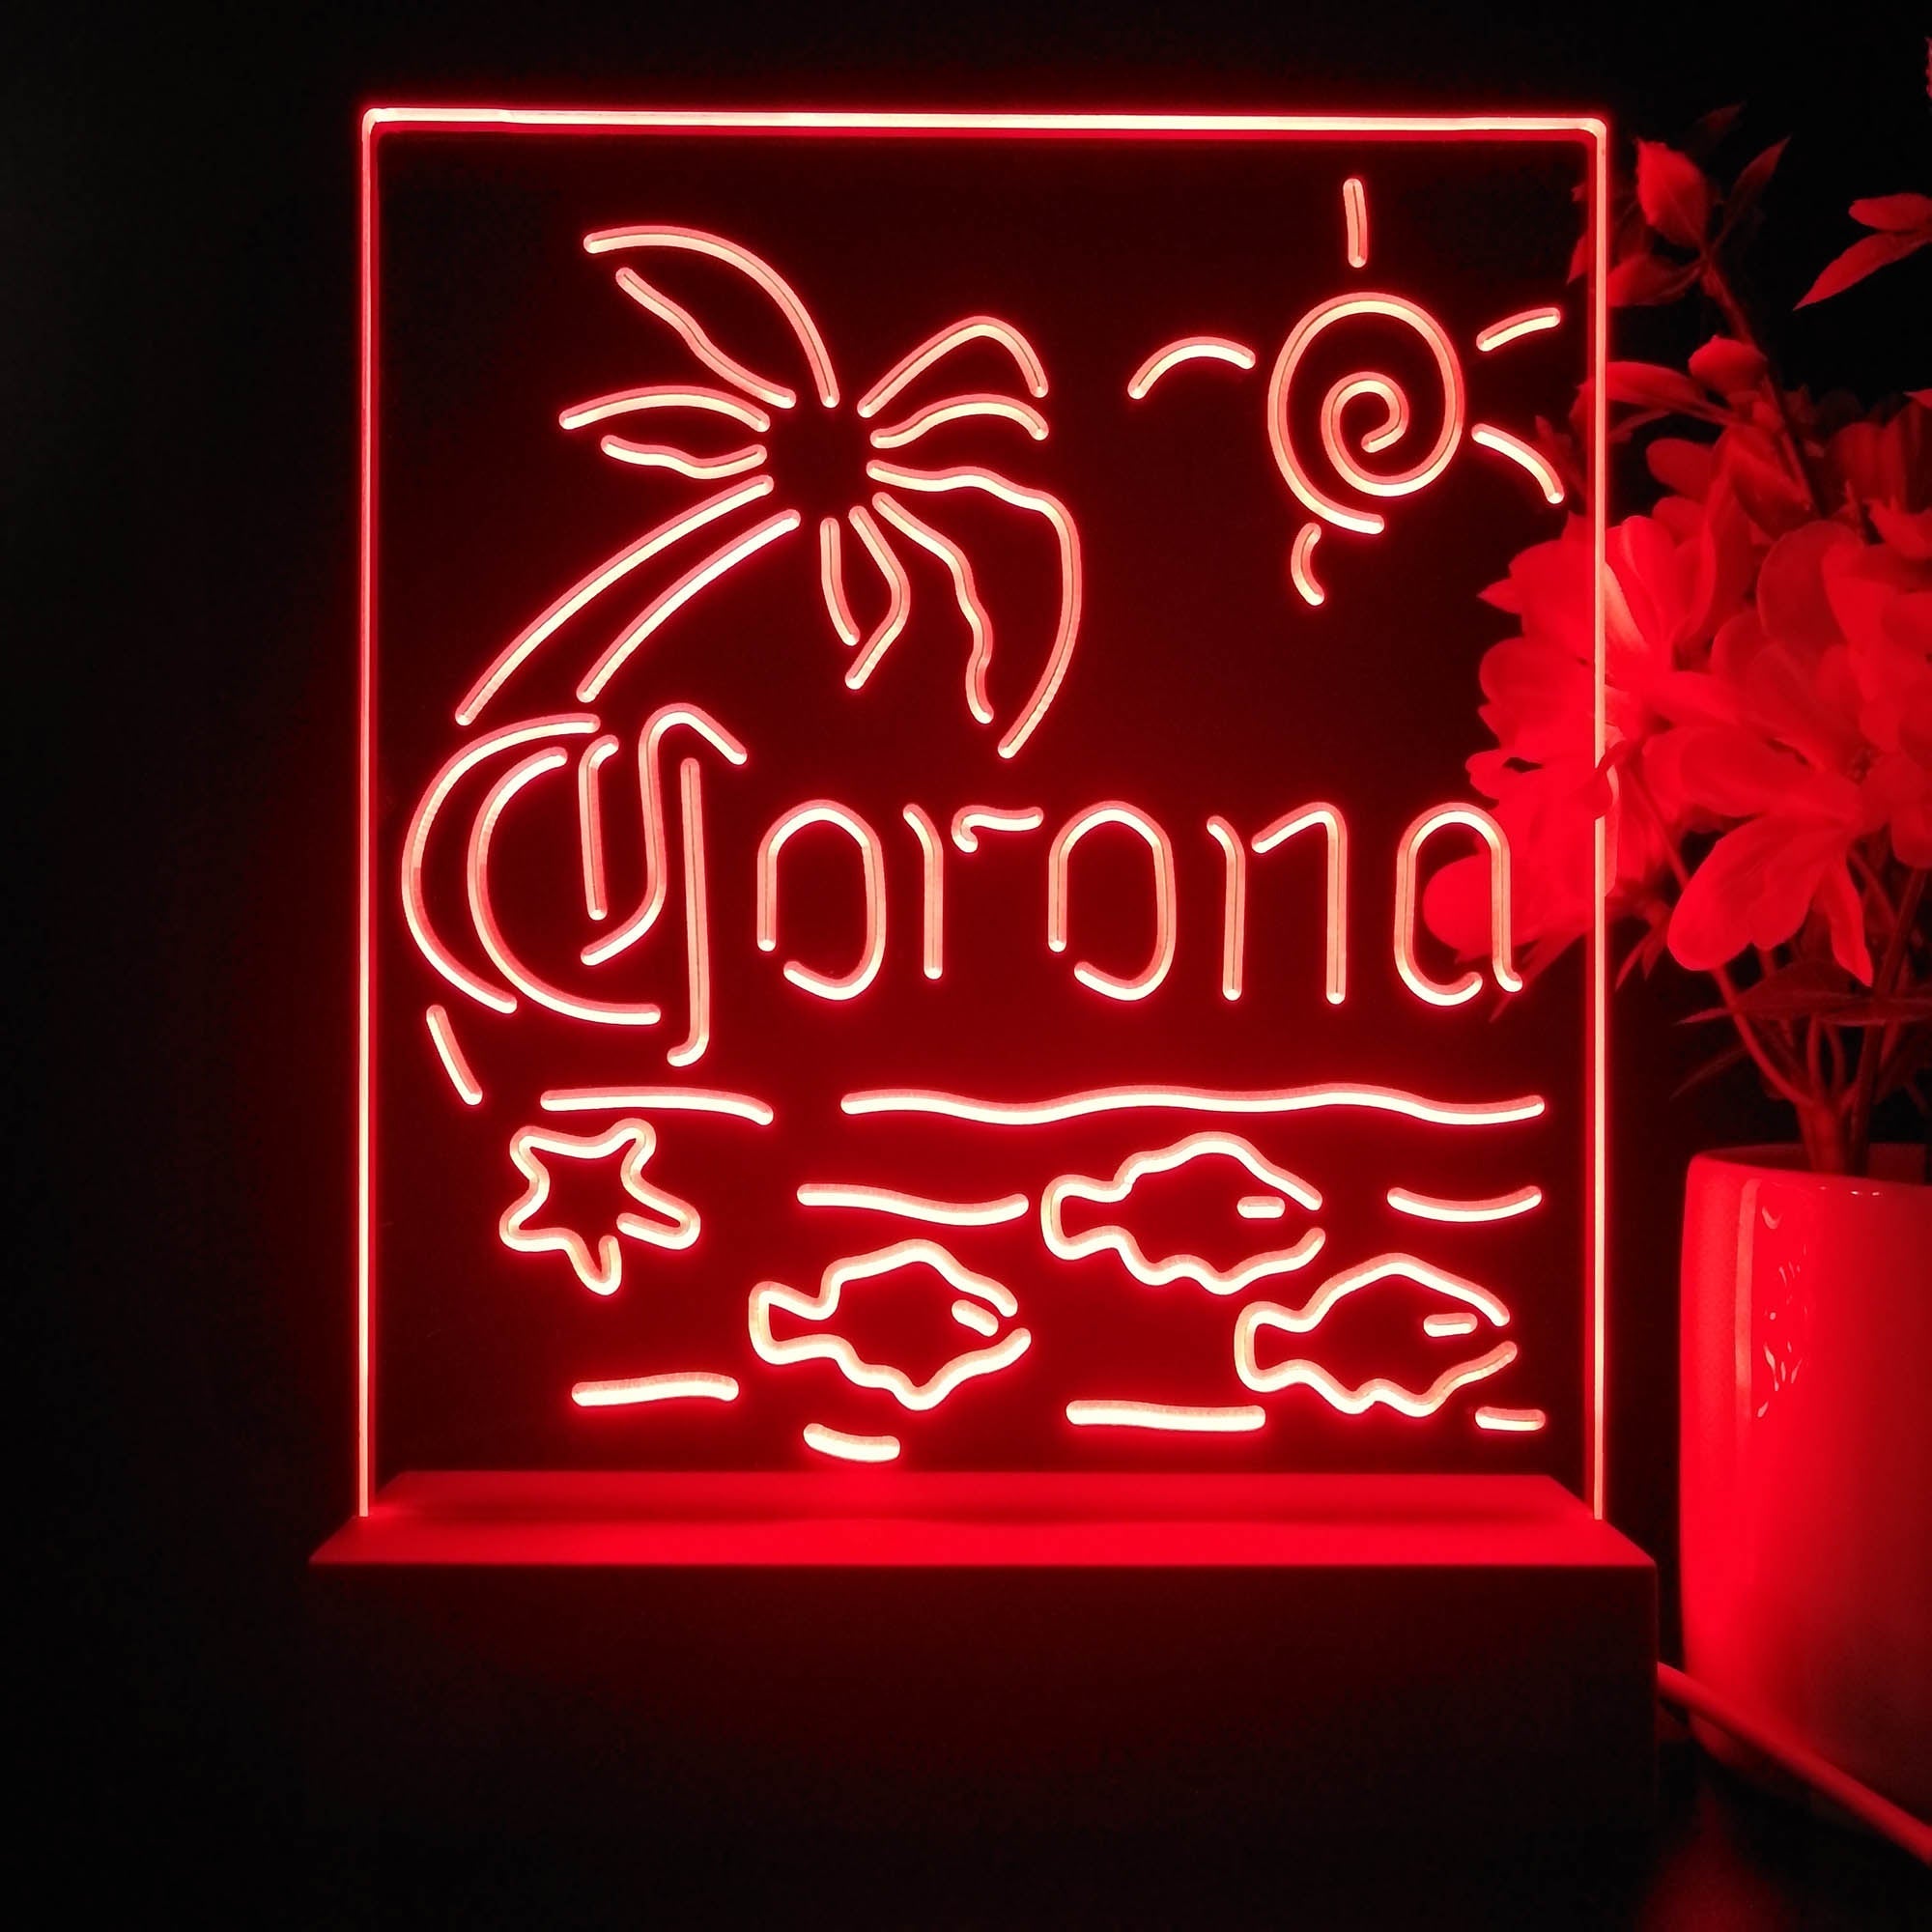 Corona Fish Sun Palm Island Night Light Neon Pub Bar Lamp